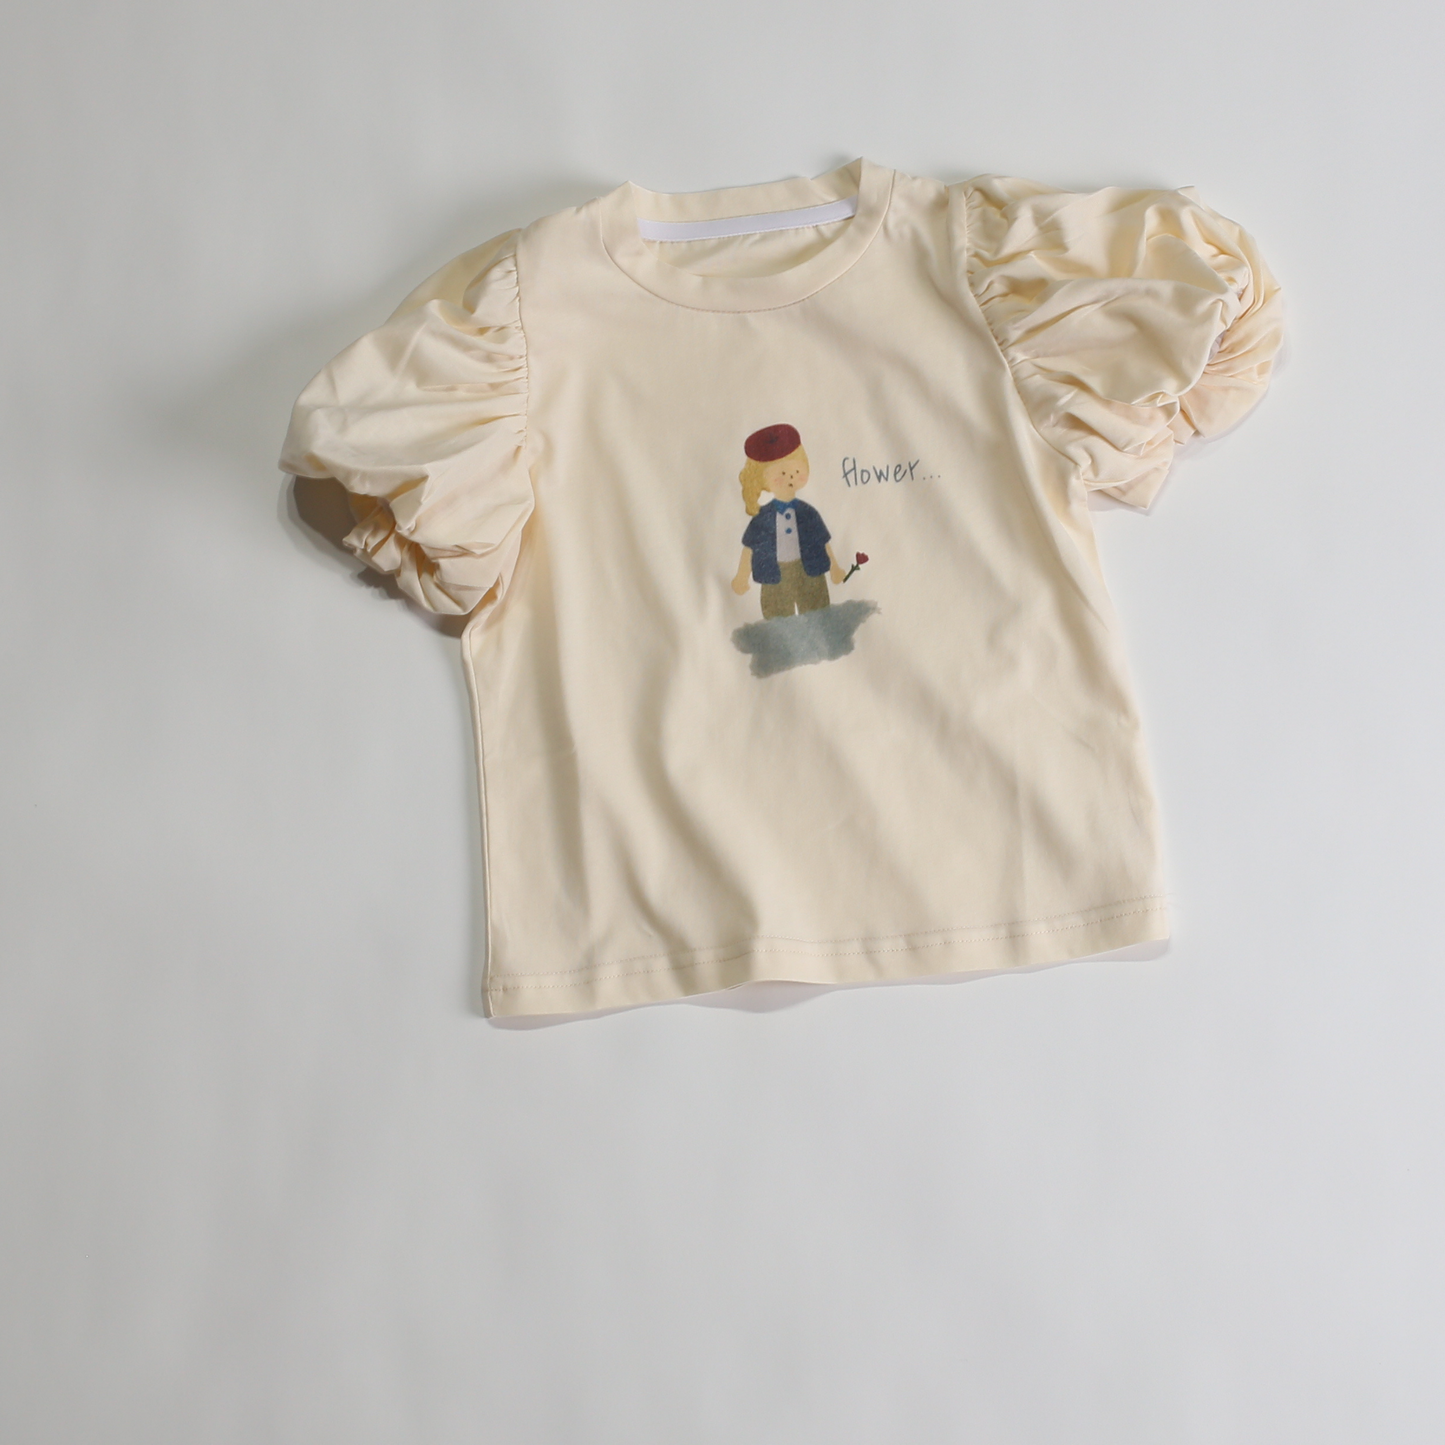 パフスリーブ 女の子プリント Tシャツ / puff sleeve wasing Tee (こども服) - kids clothes shop GUZUGUZU